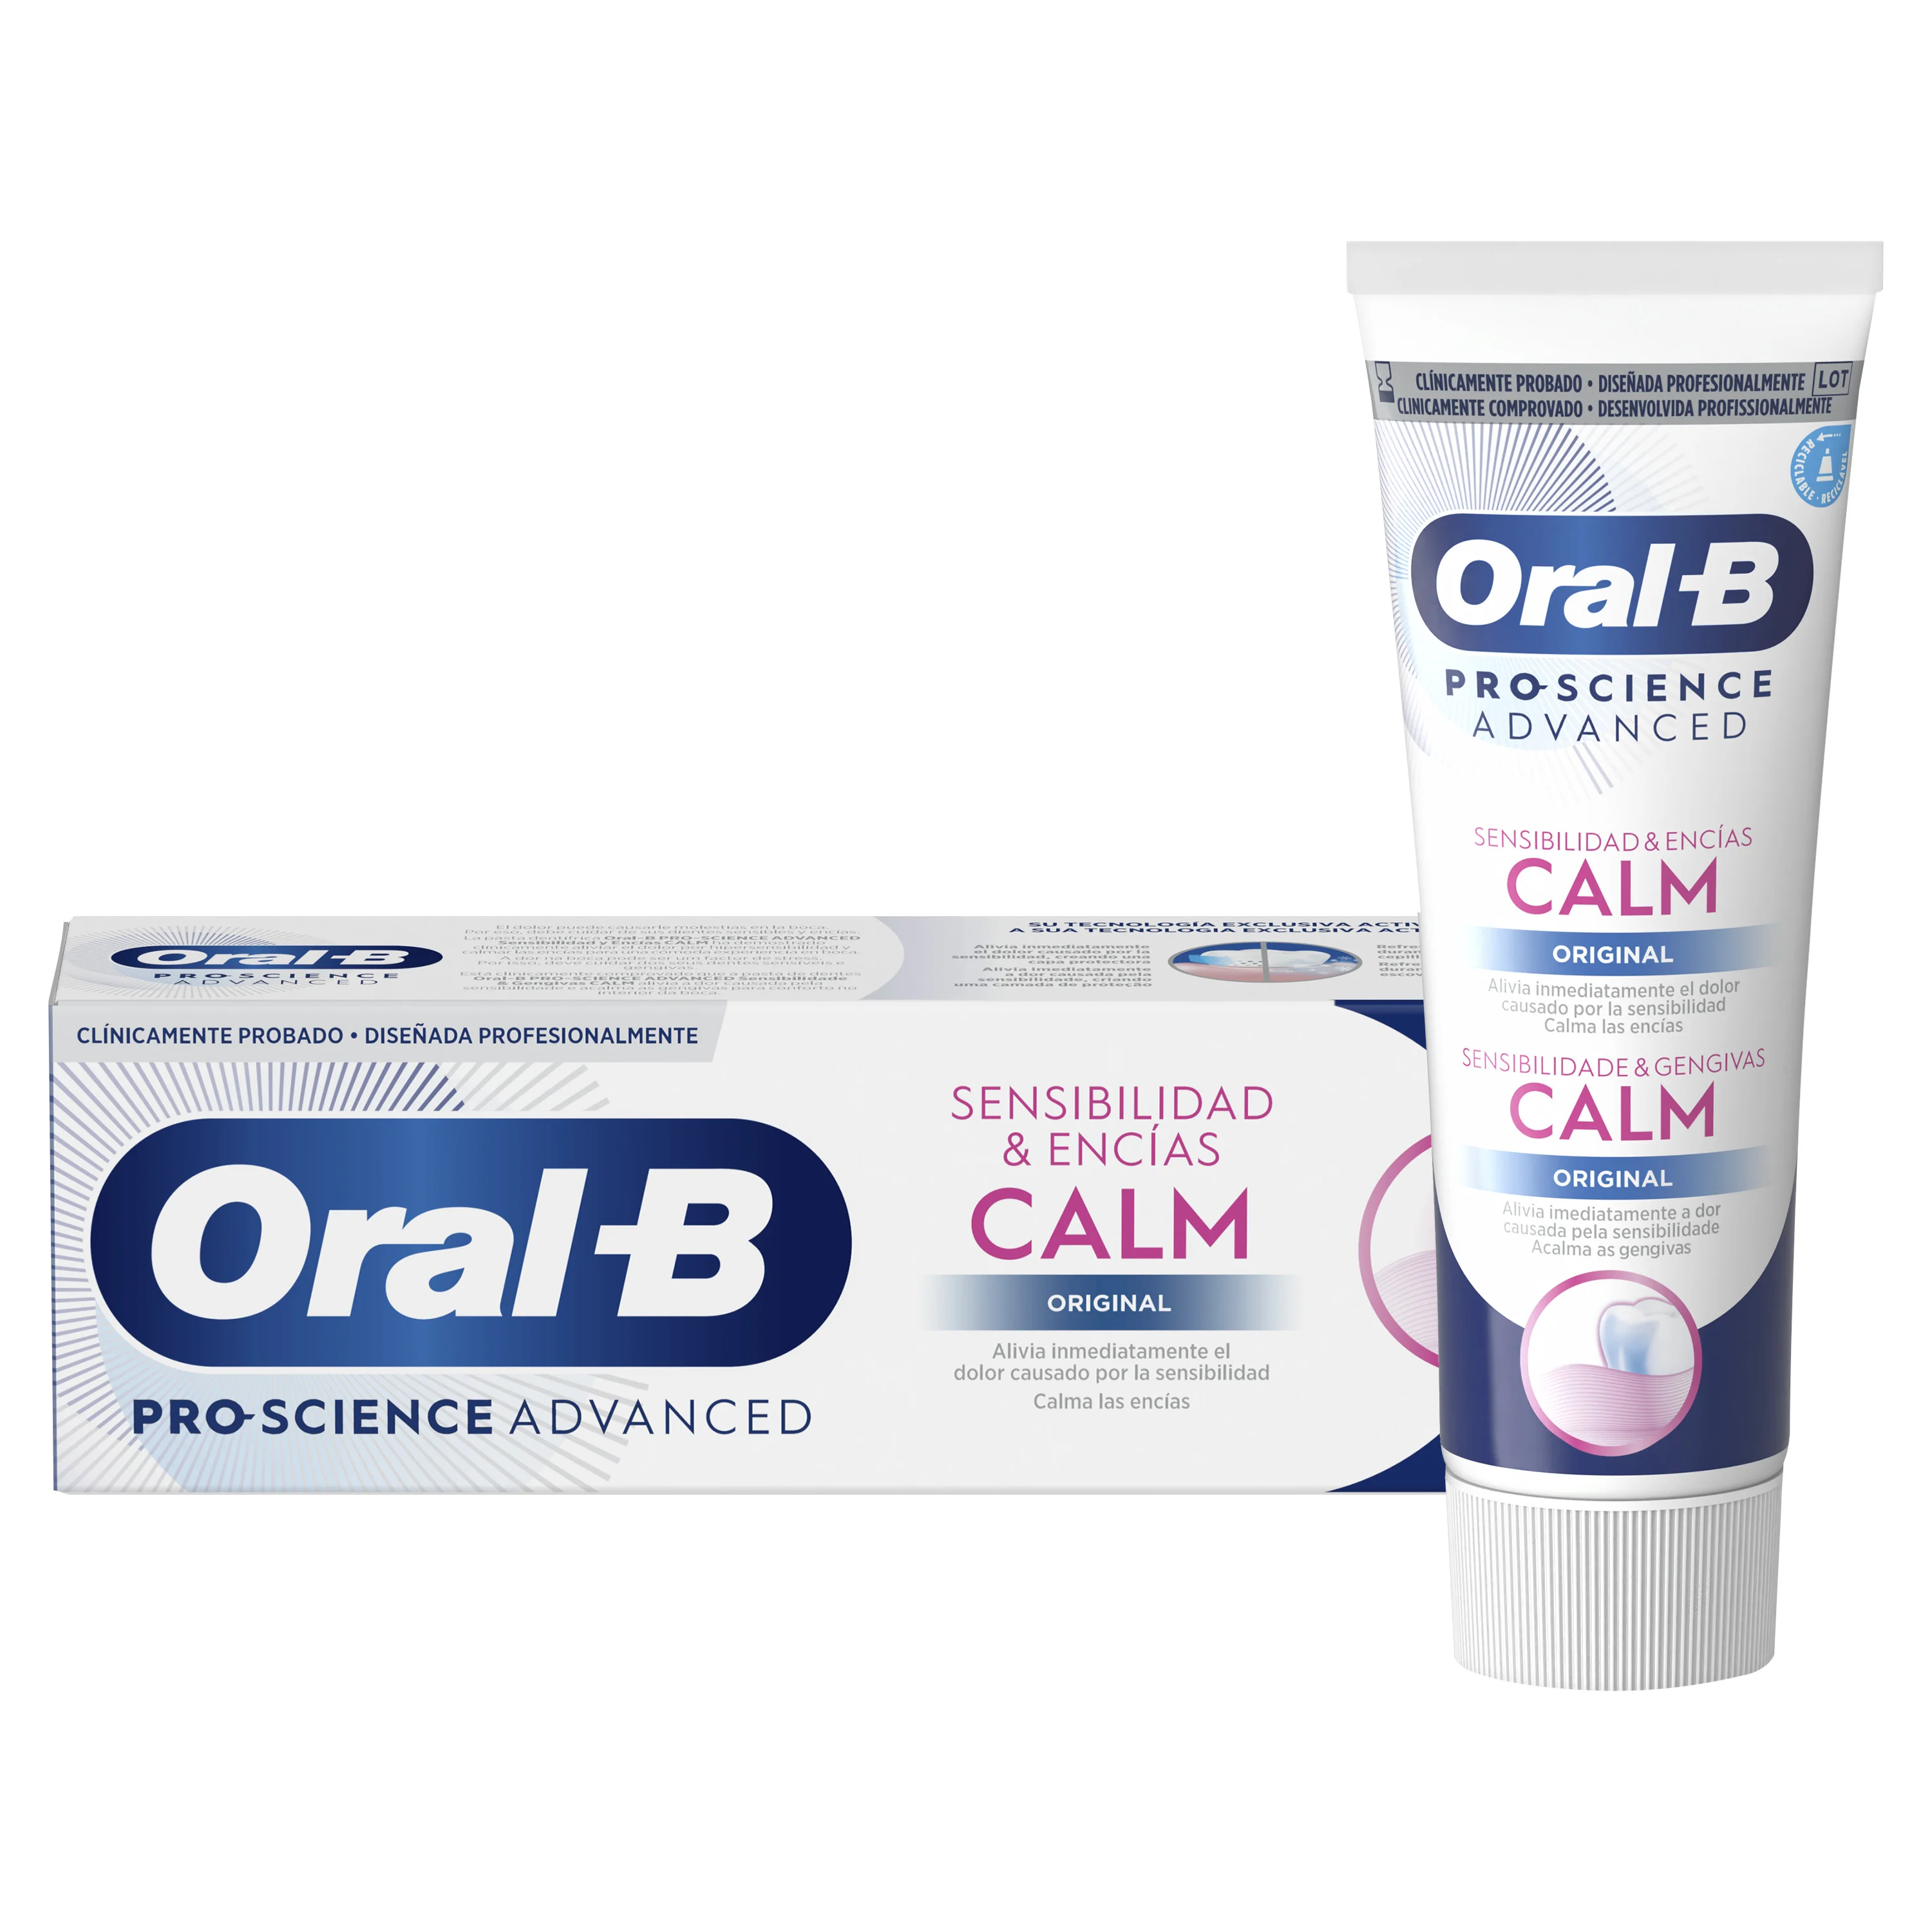 Oral-B Sensibilidad & Encías Calm Original Pasta Dentífrica - Main 